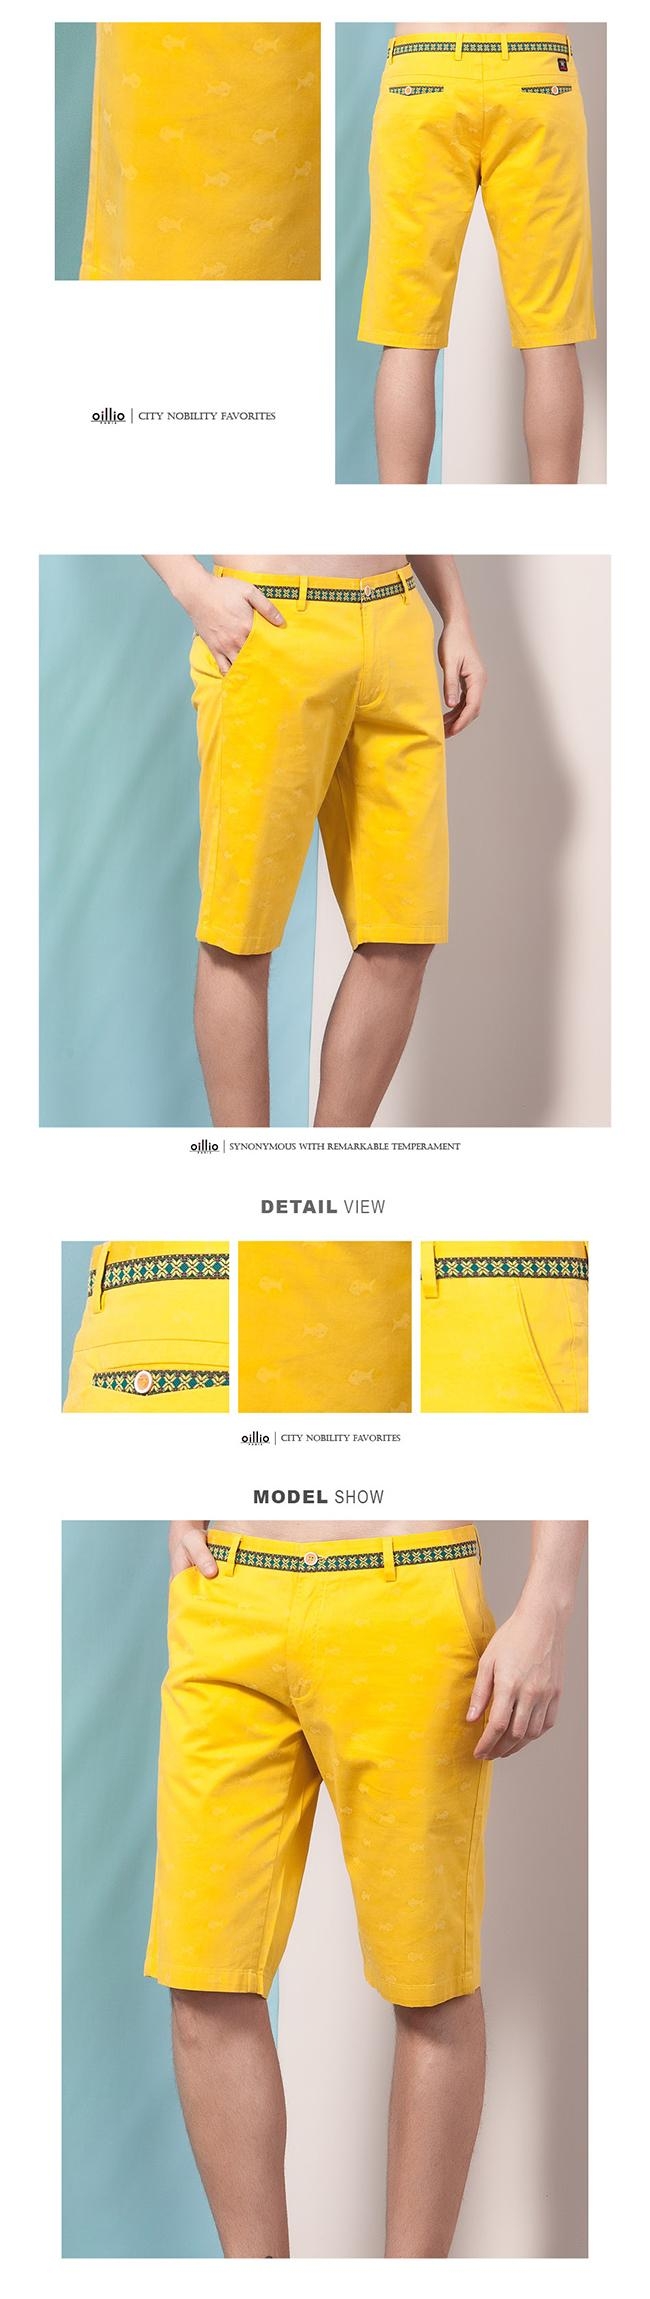 oillio歐洲貴族 休閒透氣直筒短褲 圖騰設計圖案 黃色